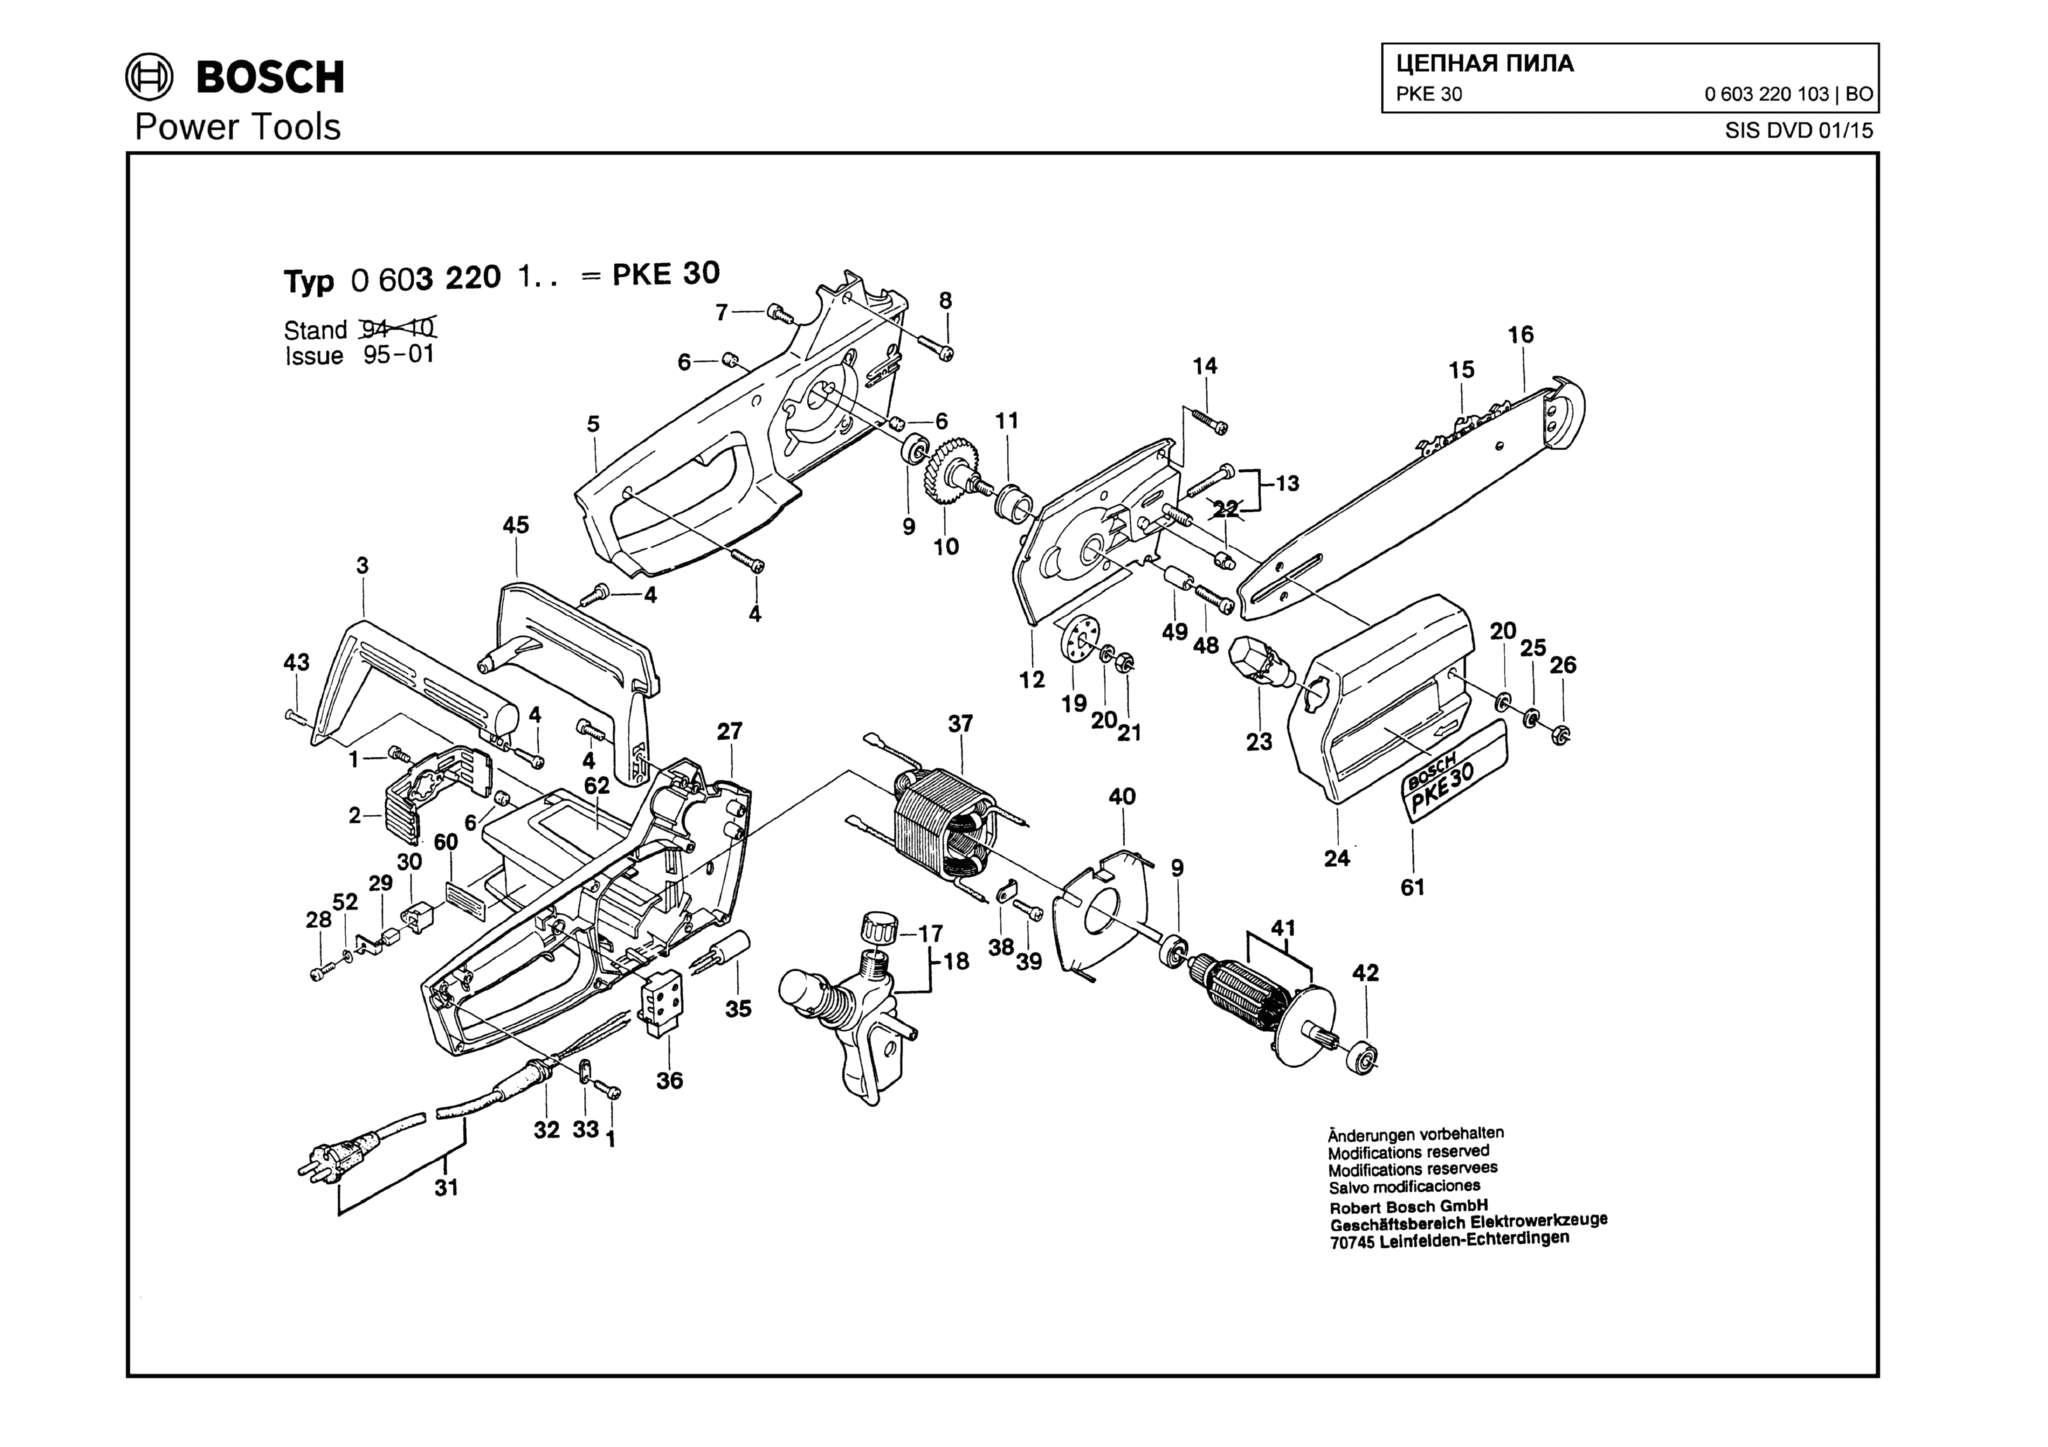 Запчасти, схема и деталировка Bosch PKE 30 (ТИП 0603220103)